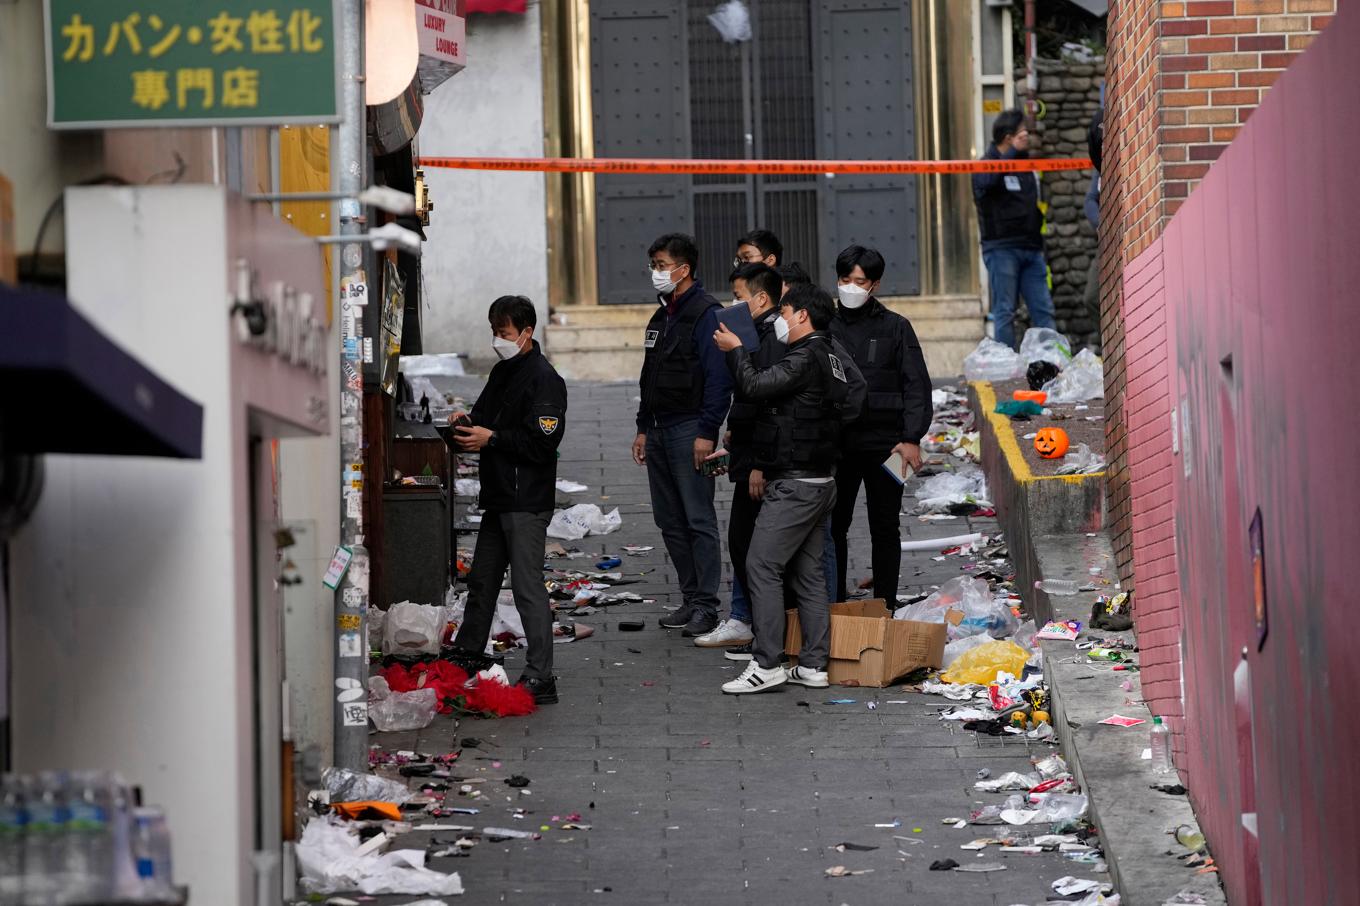 Vid den dödliga tragedin i Itaewon i Sydkoreas huvudstad Seoul i fjol omkom över 150 människor. Arkivbild. Foto: Lee Jin-man/AP/TT